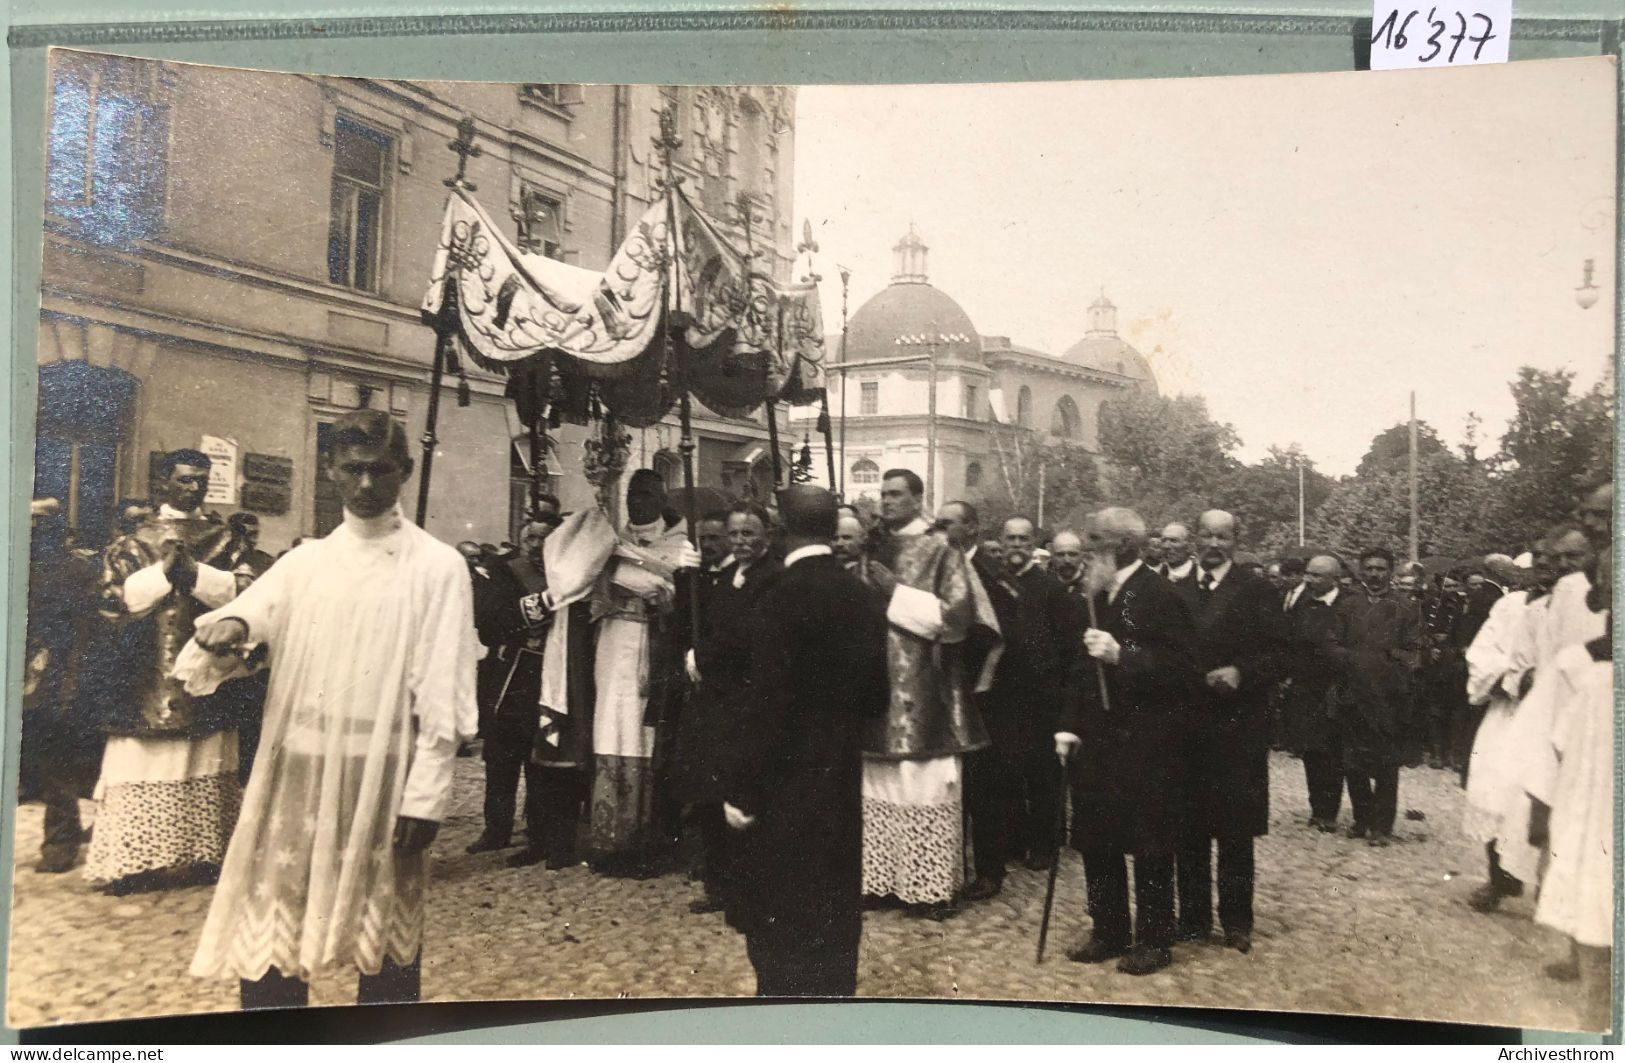 Wilno : 1917 Procession Autour De La Cathédrale De Vilnius (16'377) - Lithuania